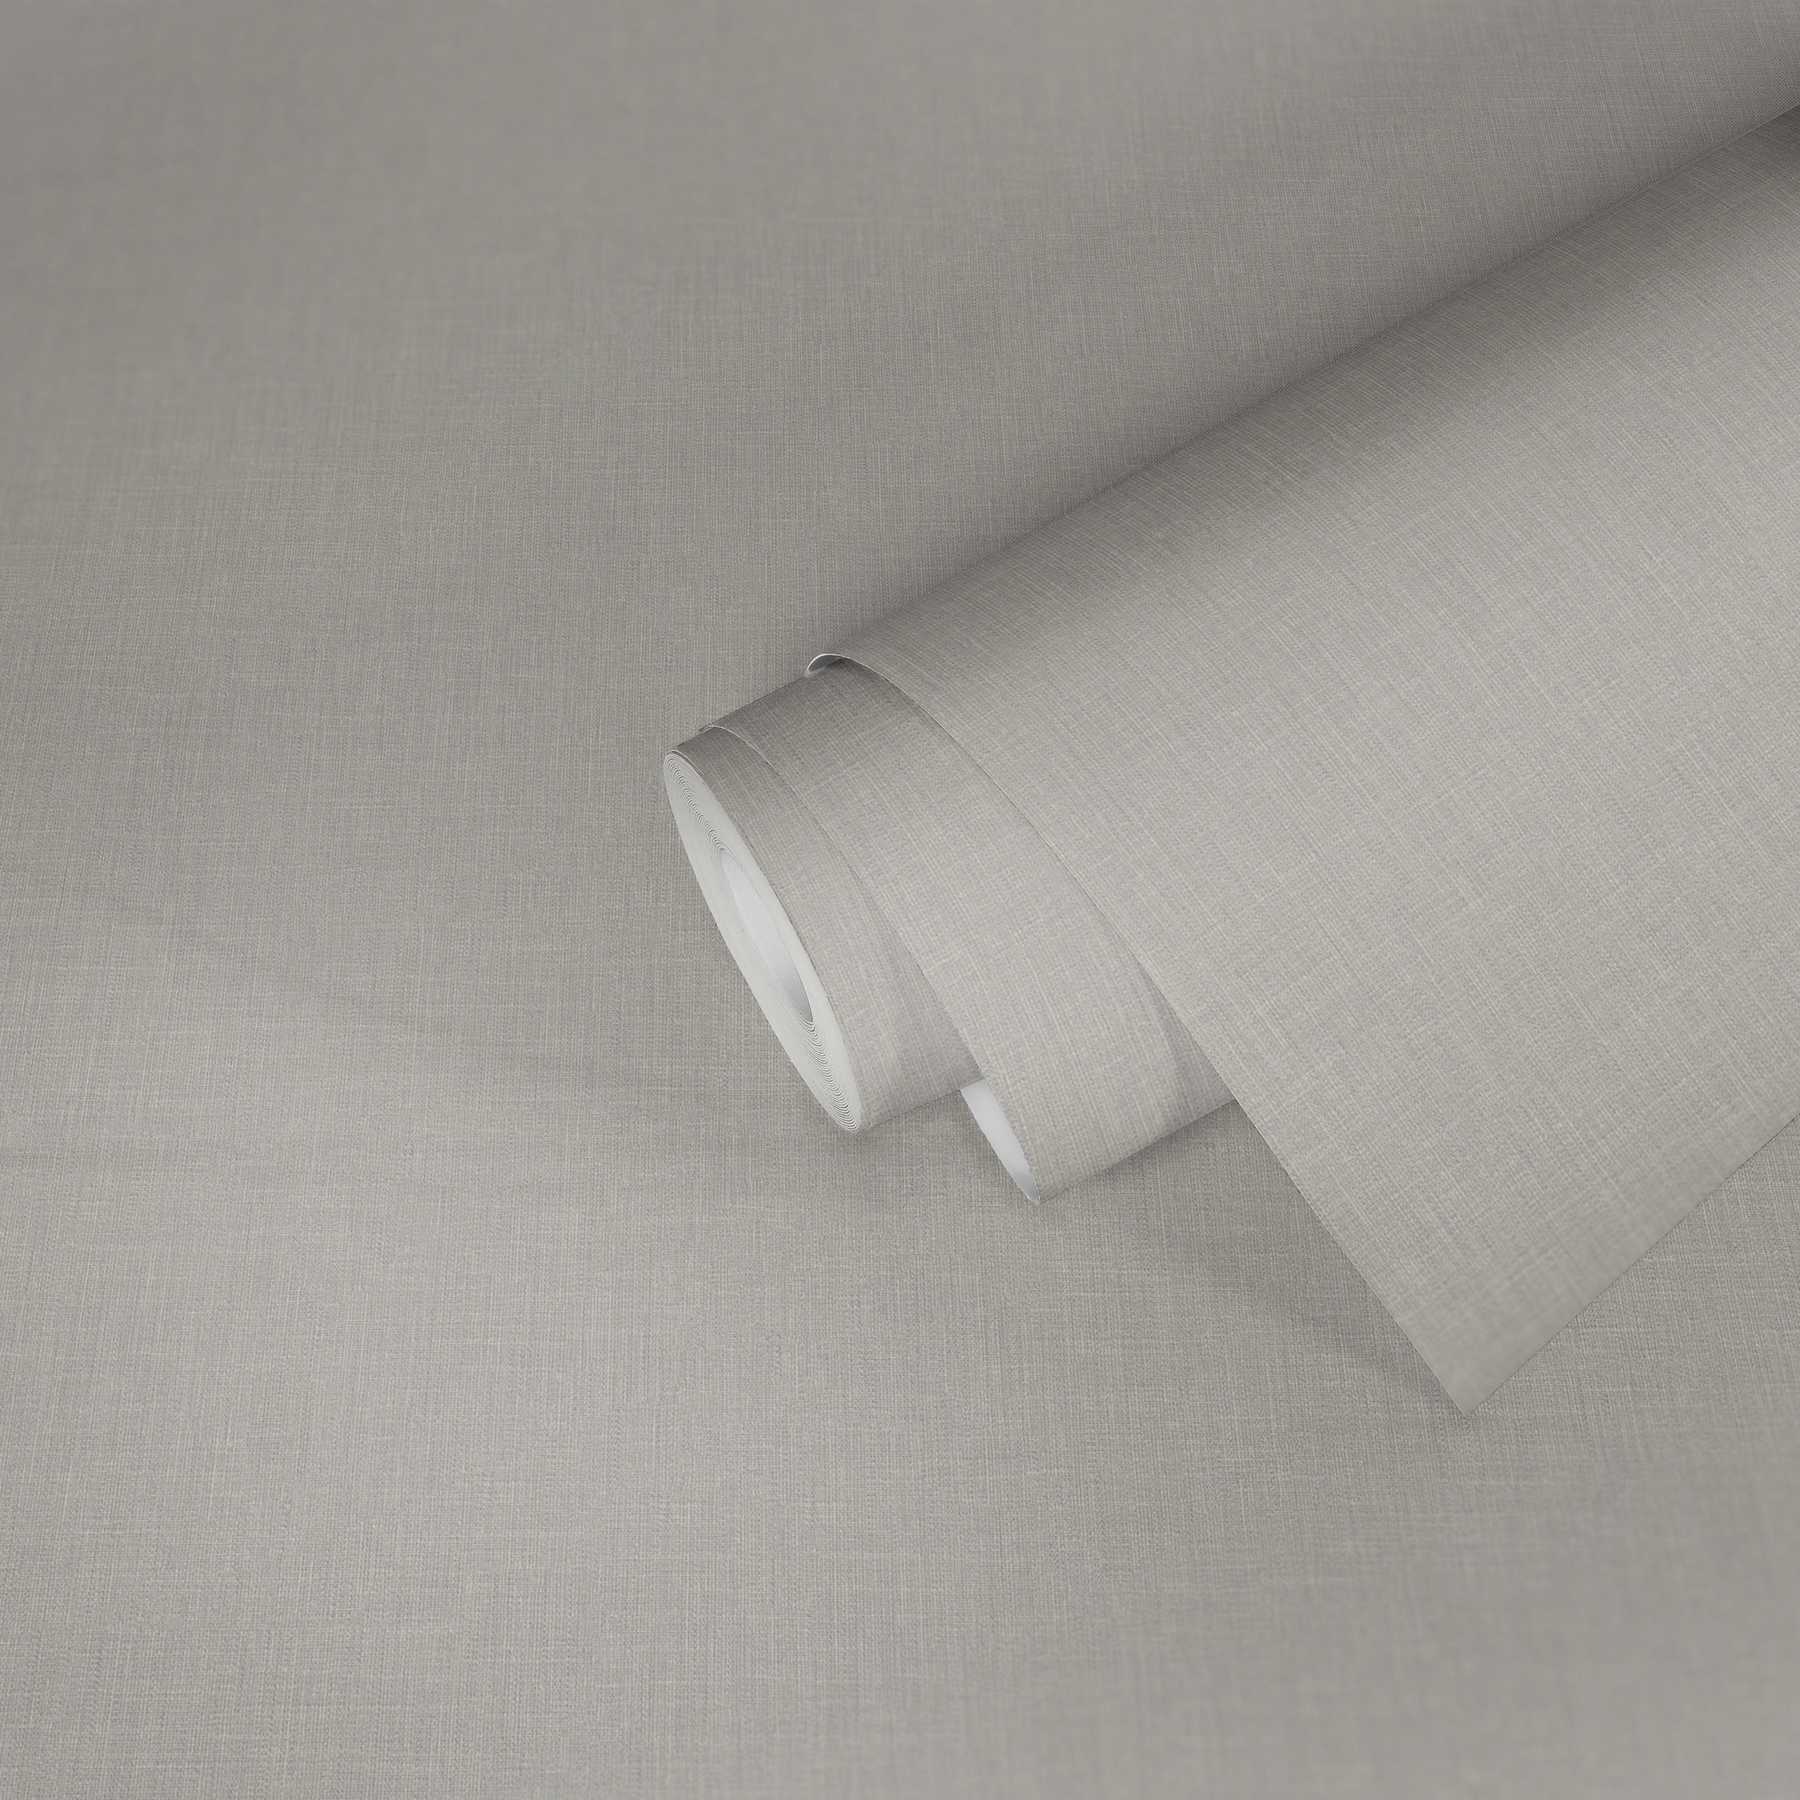             Carta da parati in tessuto non tessuto grigio chiaro con aspetto tessile e motivo strutturato
        